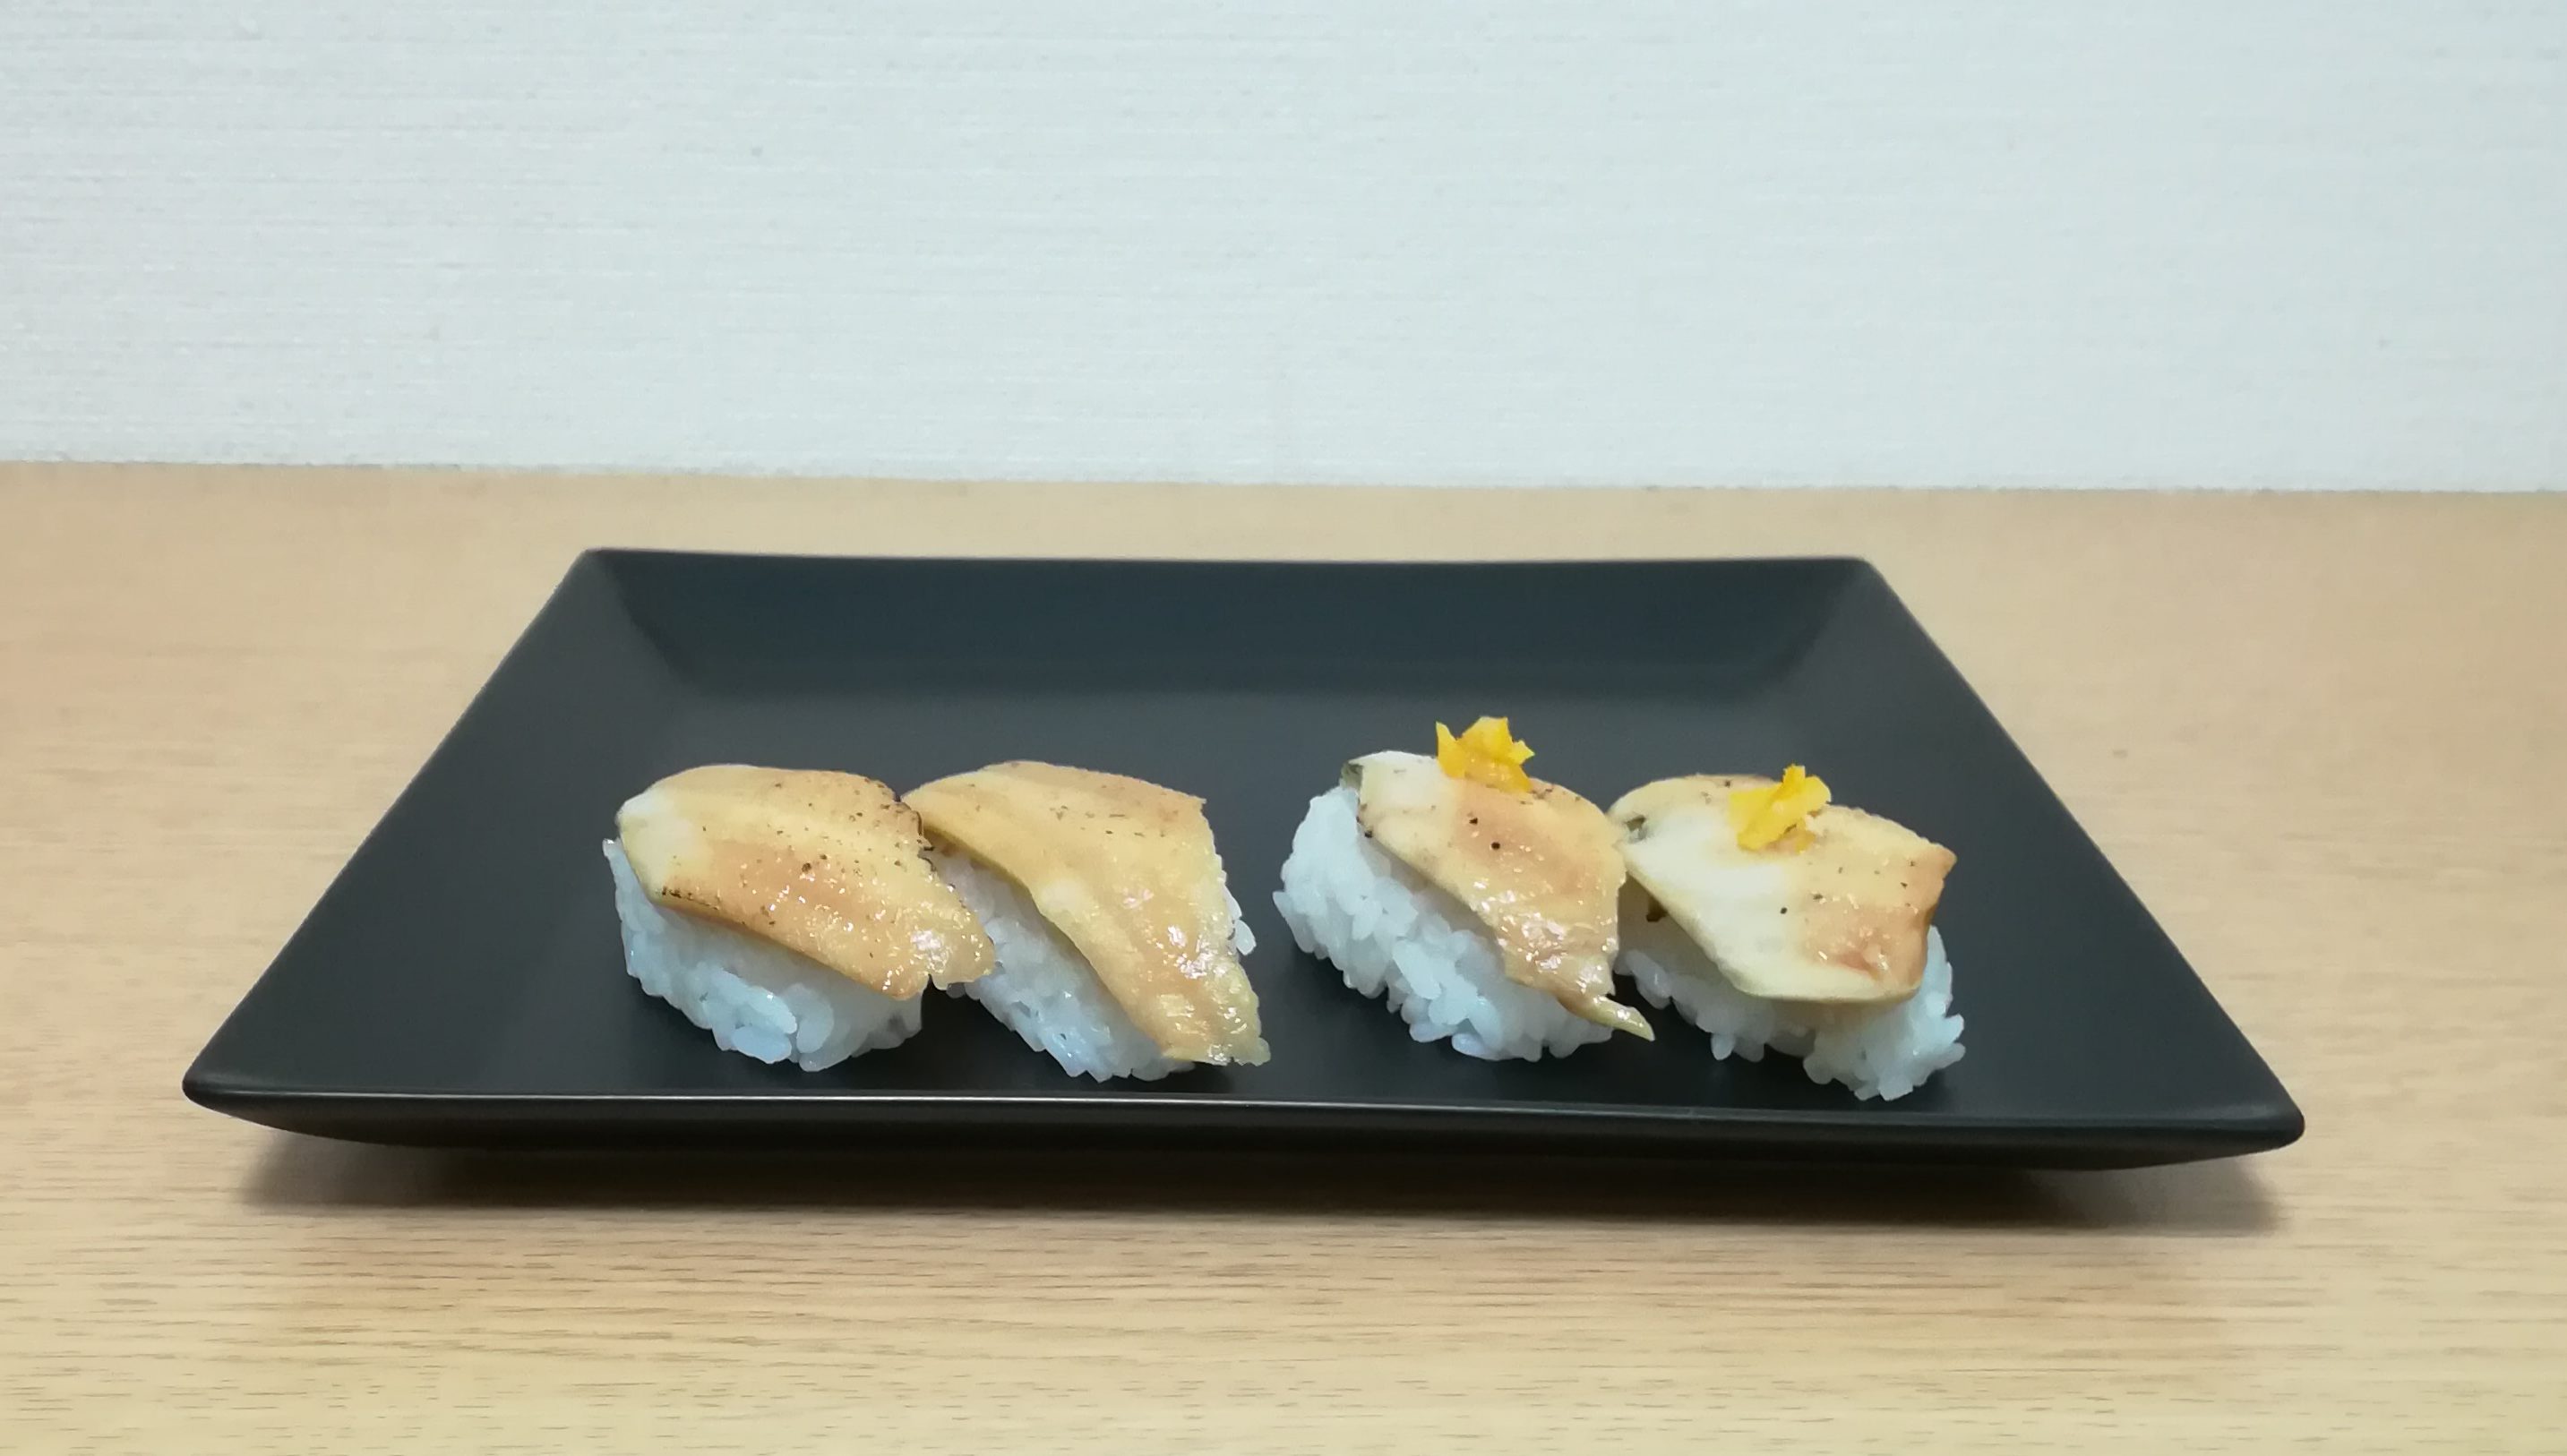 ゆず塩 はま寿司の100円2貫 煮あなご を食べ比べ スシメシ